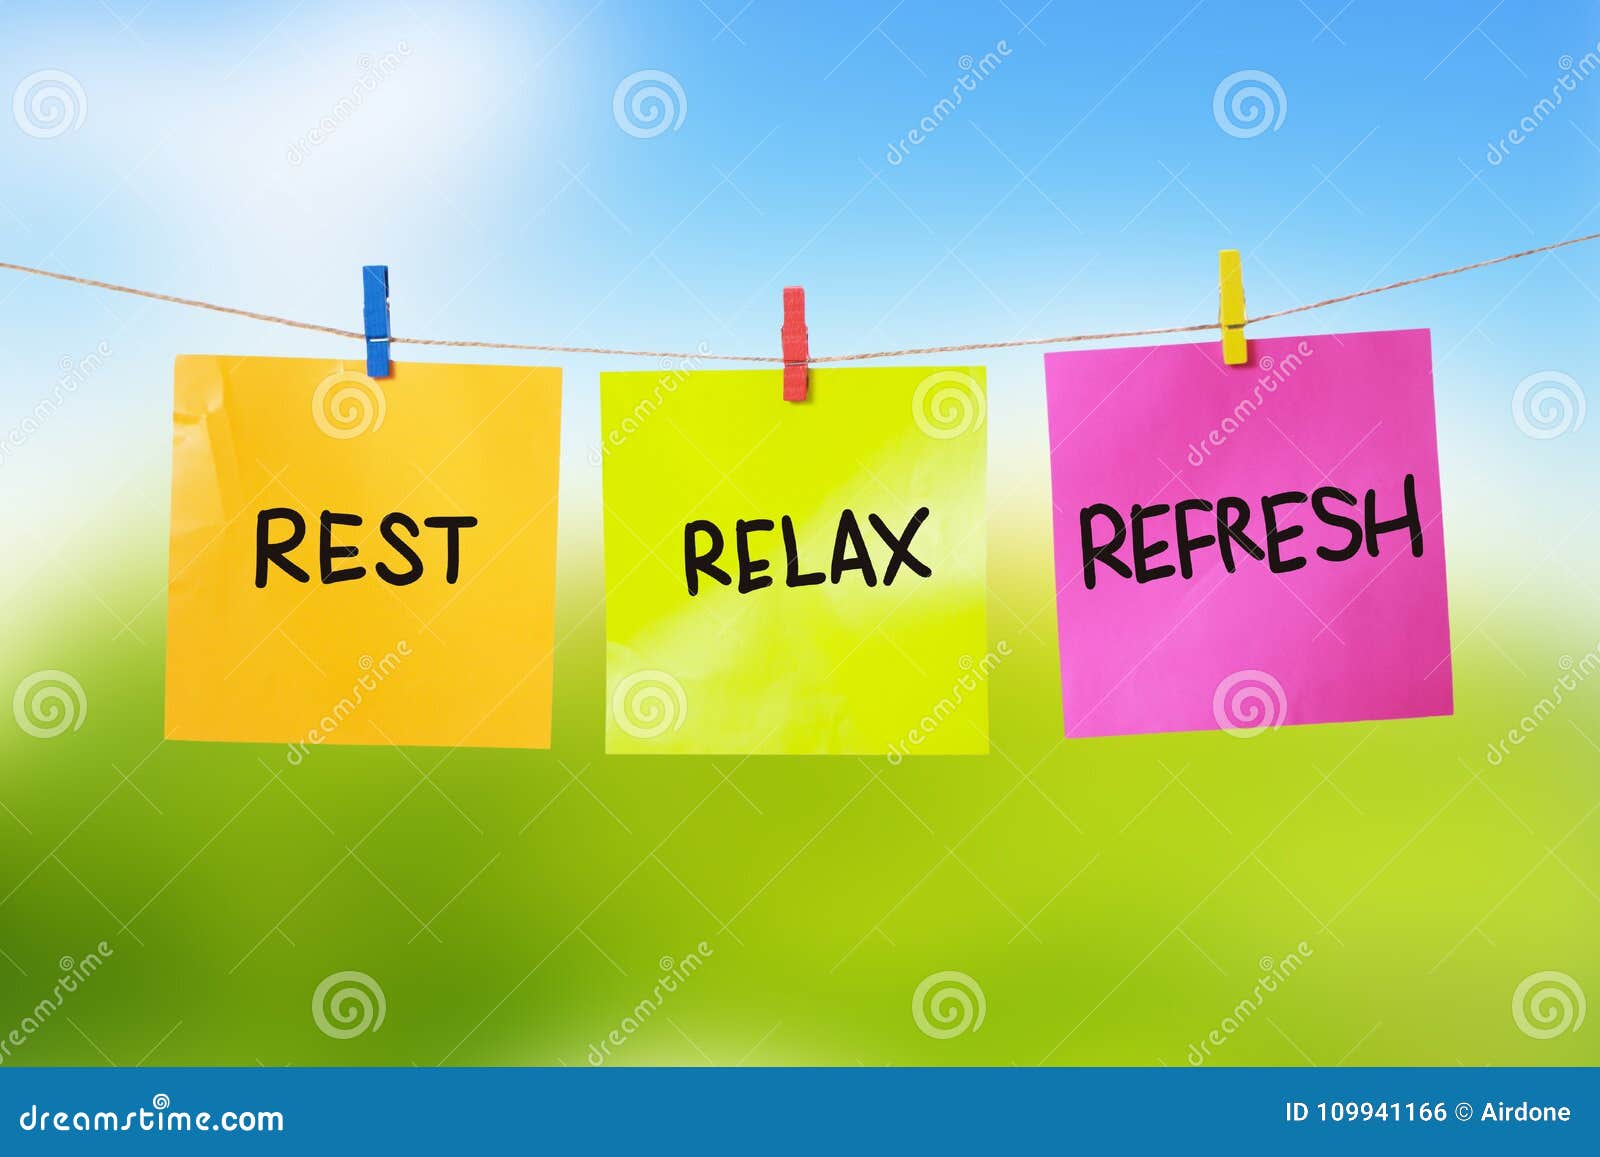 rest, relax, refresh, motivational text